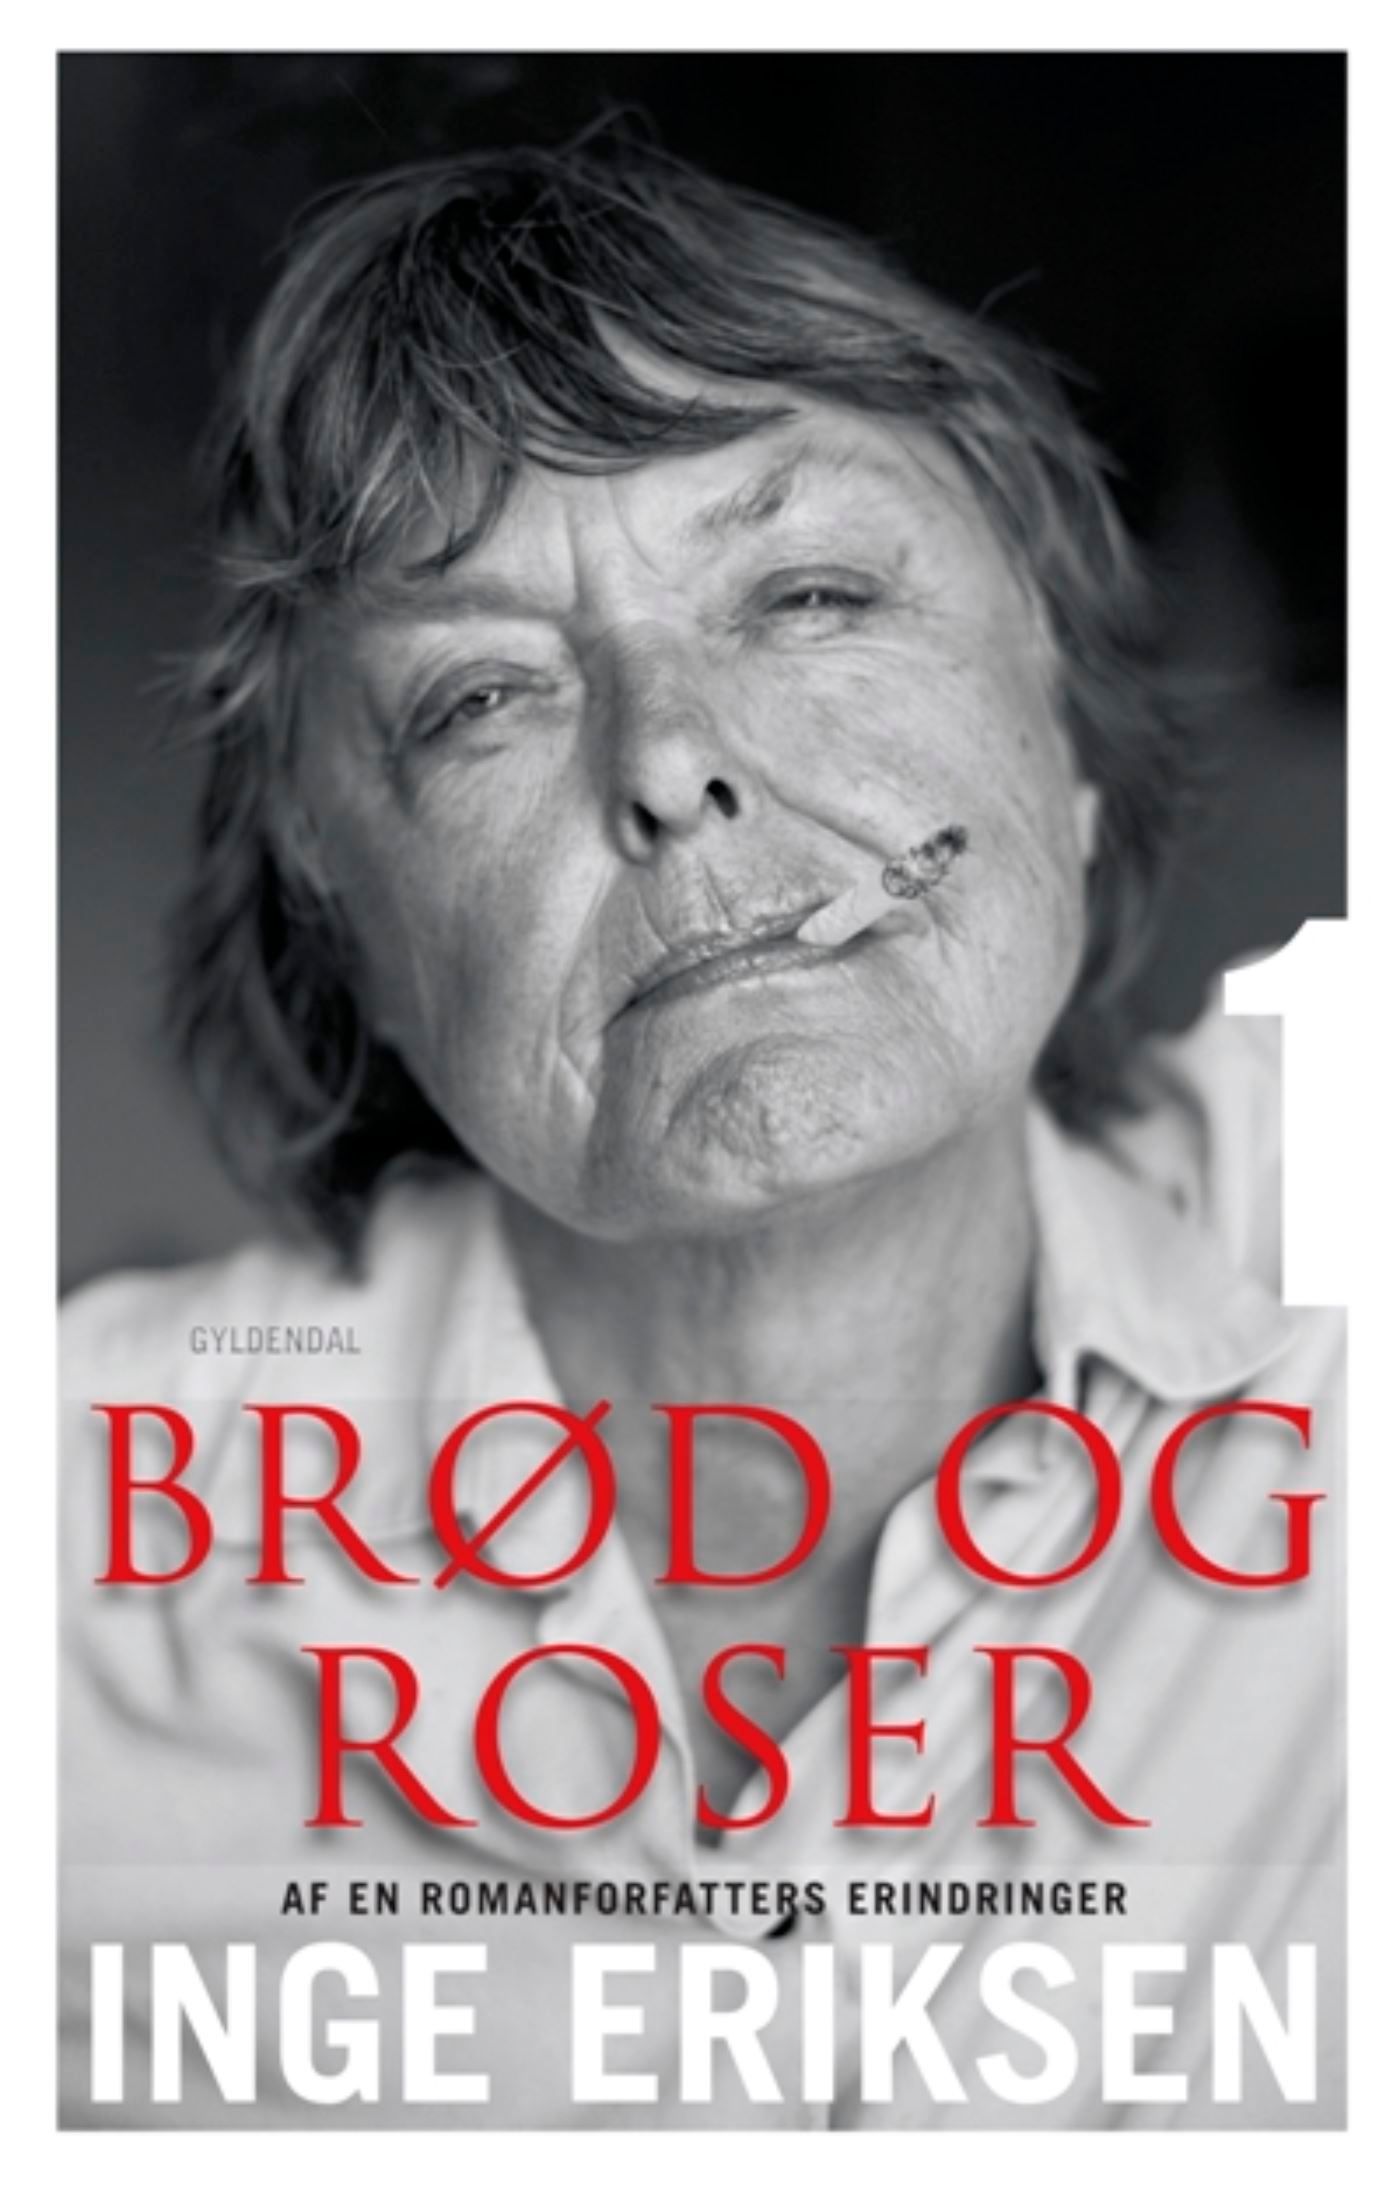 Brød og roser, audiobook by Inge Eriksen